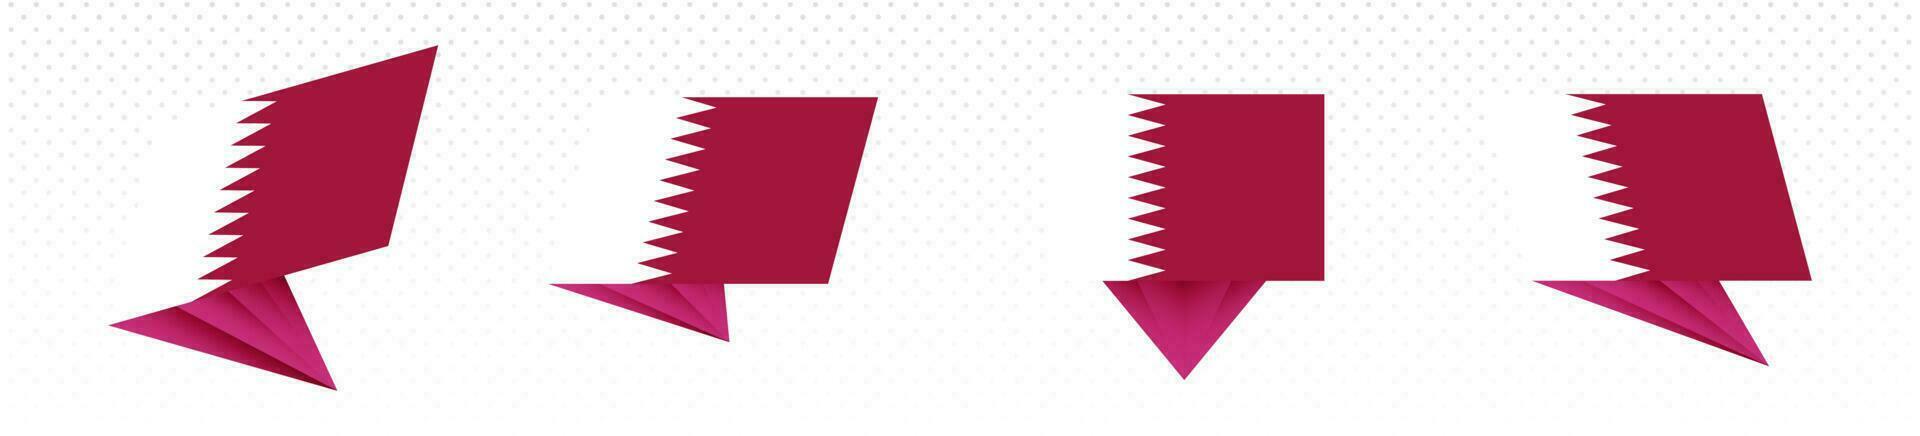 Flagge von Katar im modern abstrakt Design, Flagge Satz. vektor